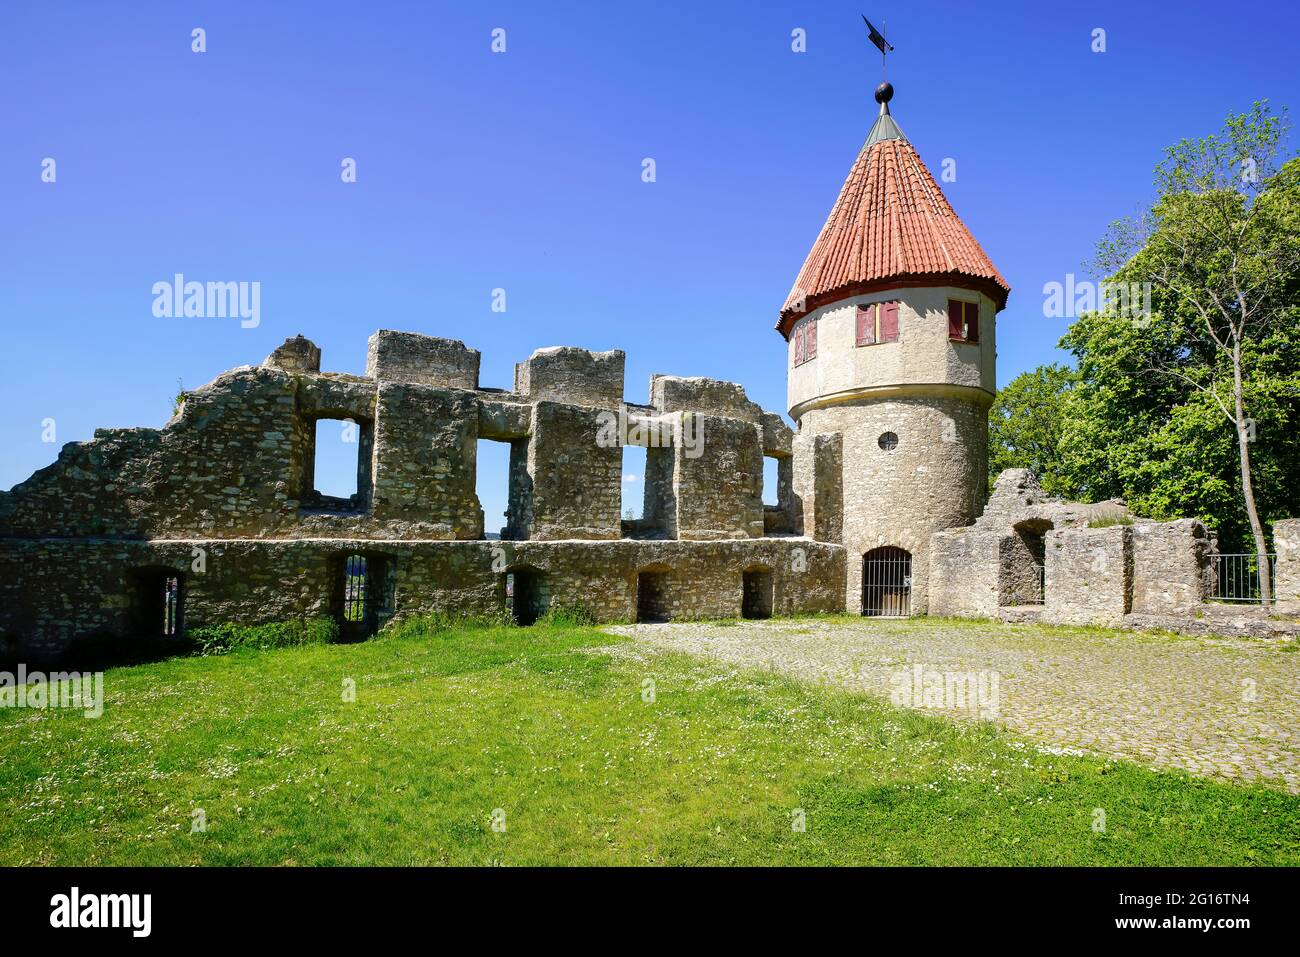 Honberg castle ruins outside Tuttlingen, Baden Württemberg in South Germany. Stock Photo